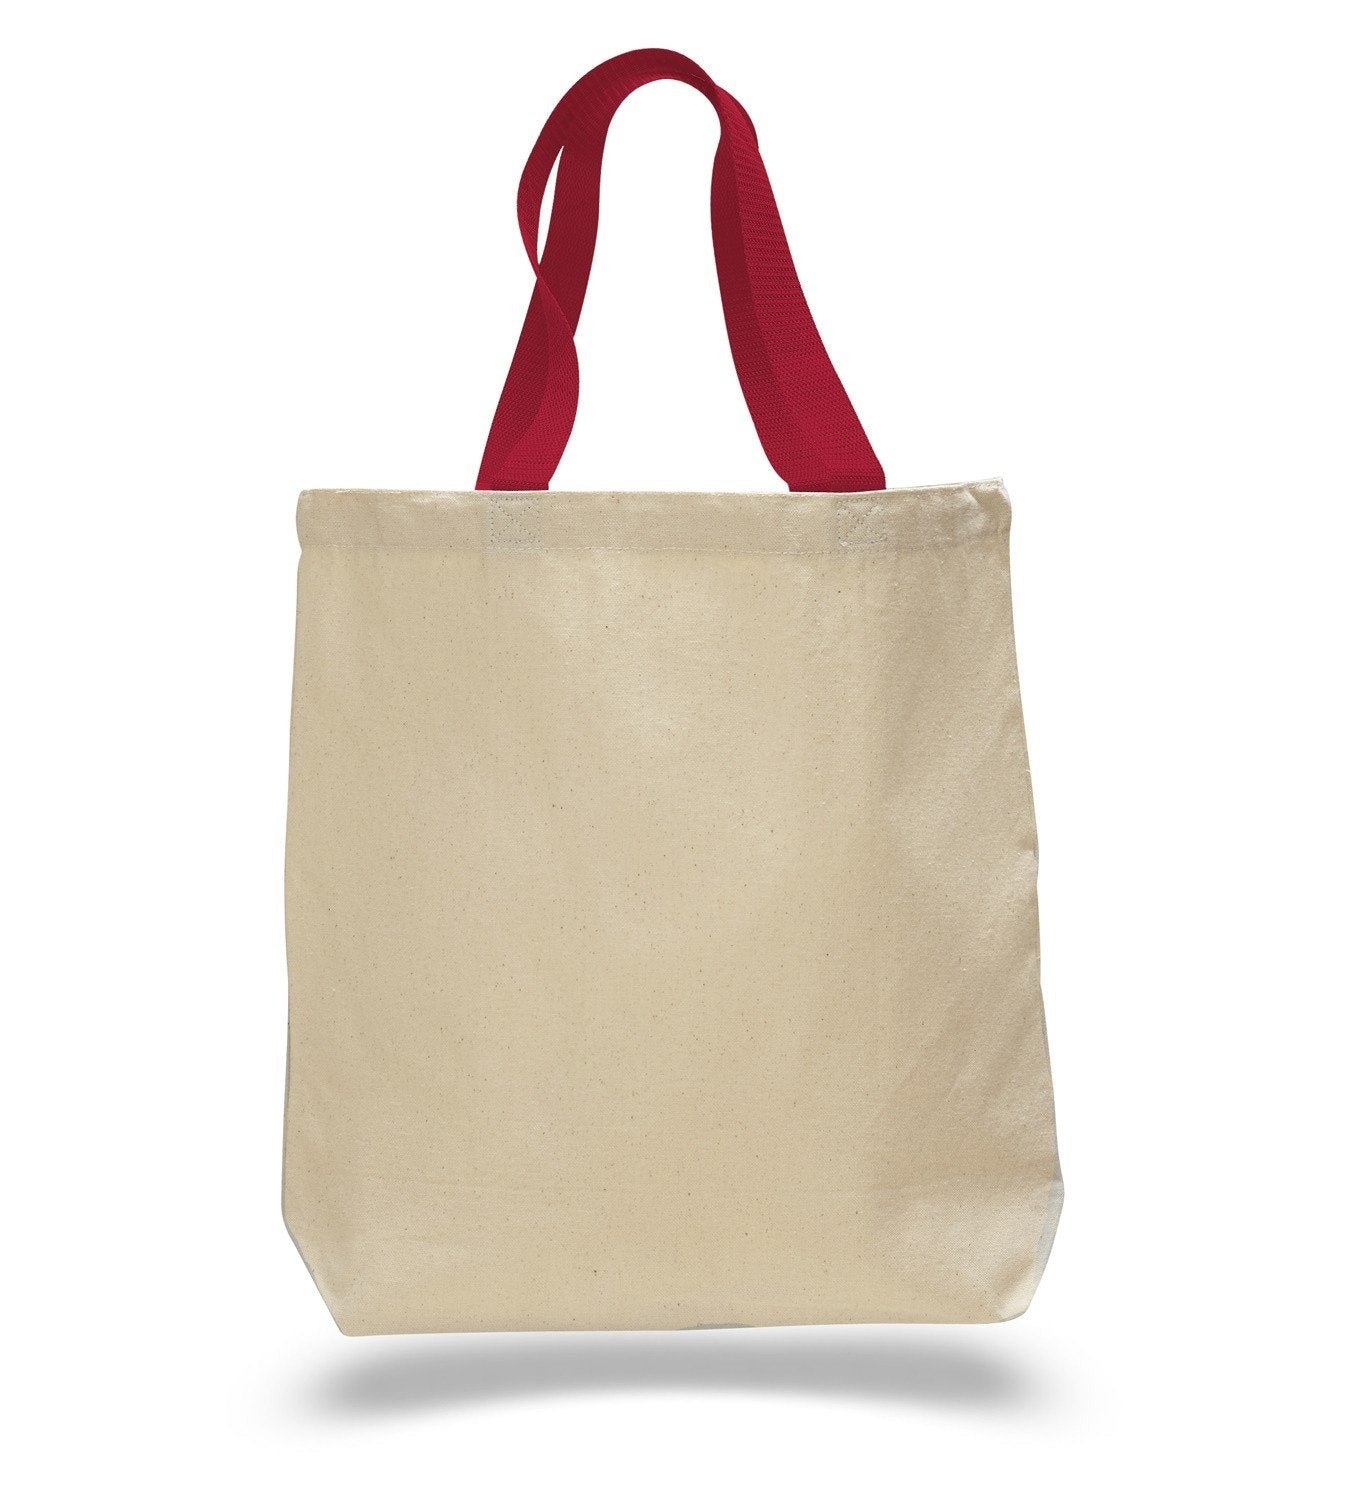 Bag & Purse Handles - Bag Making Supplies - Haberdashery